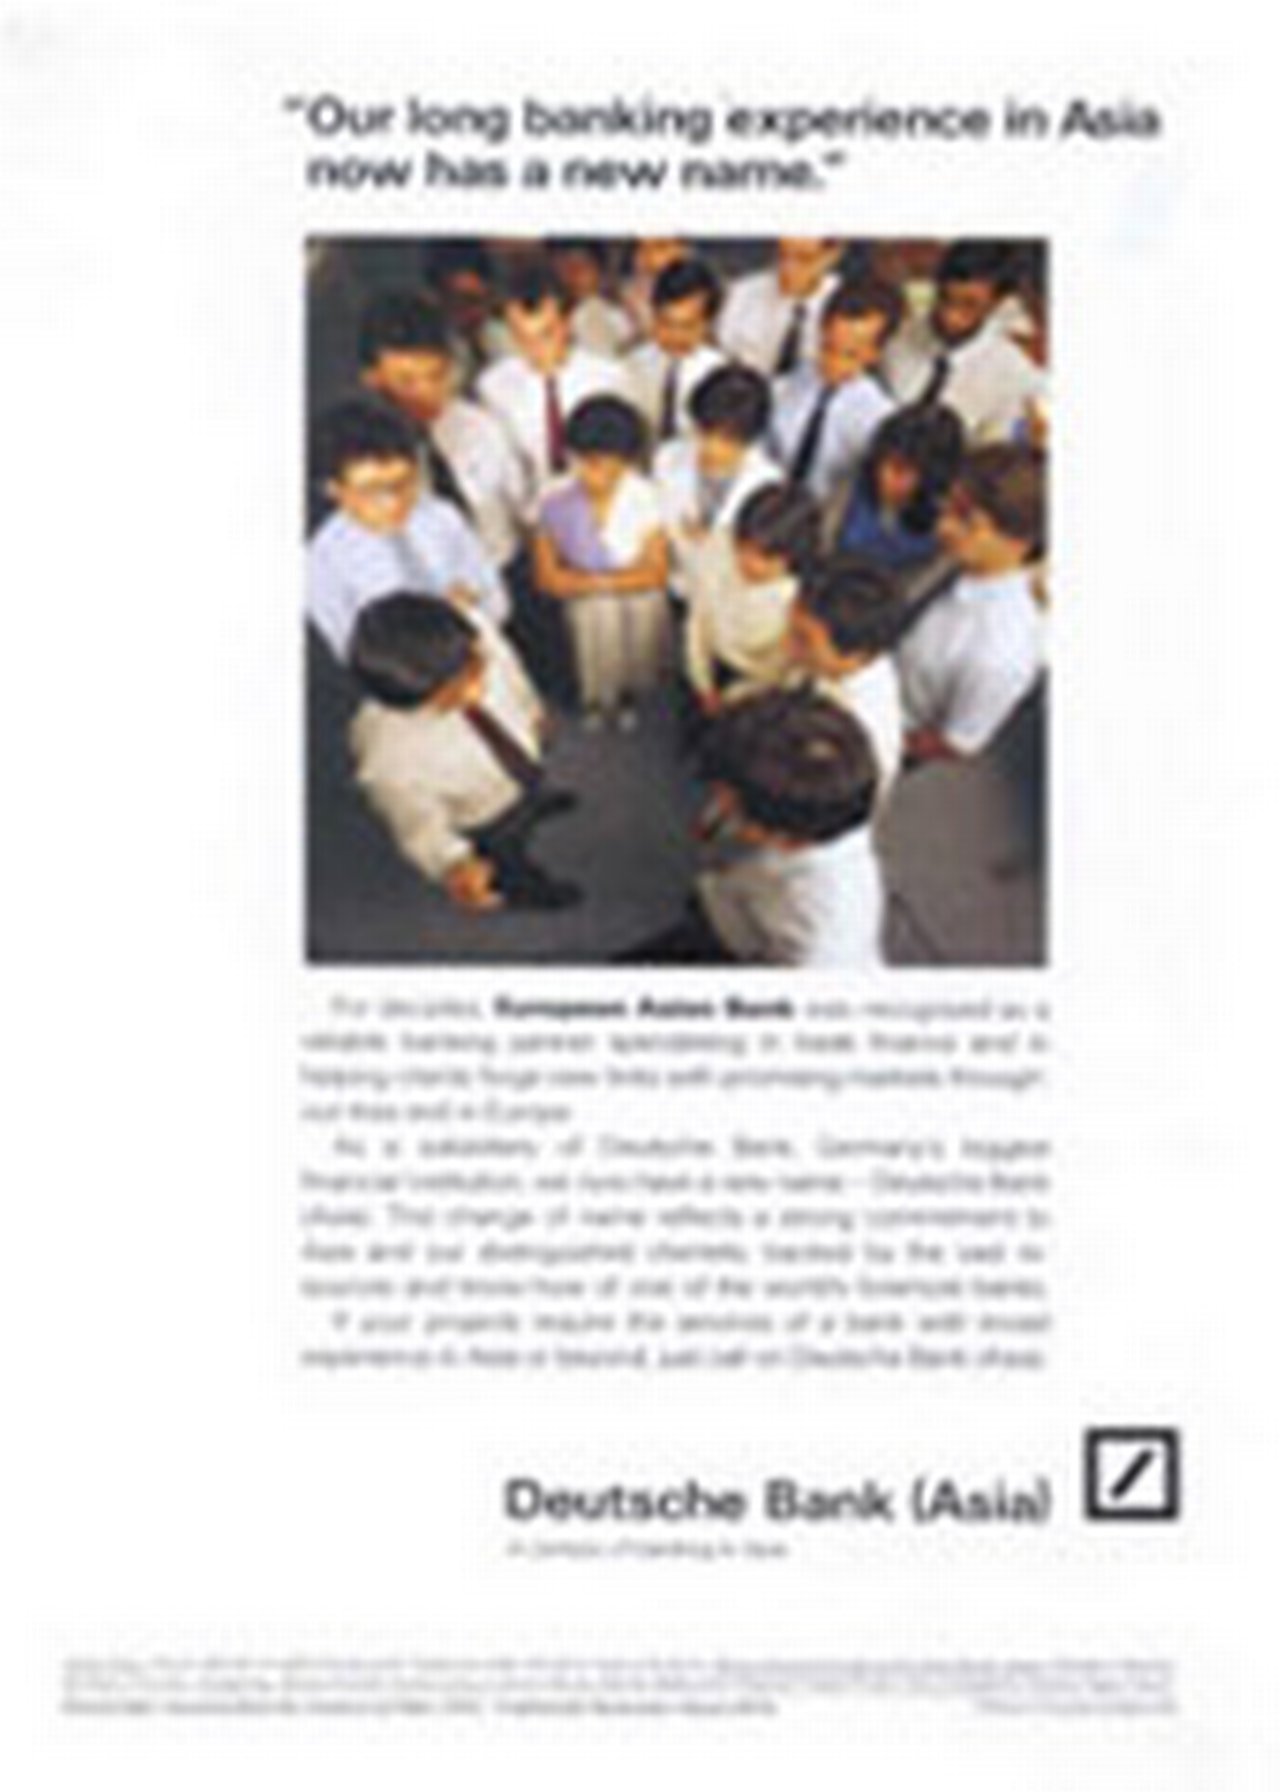 1986-Deutsche-Bank-History-Branch-Singapore-Asia.jpg